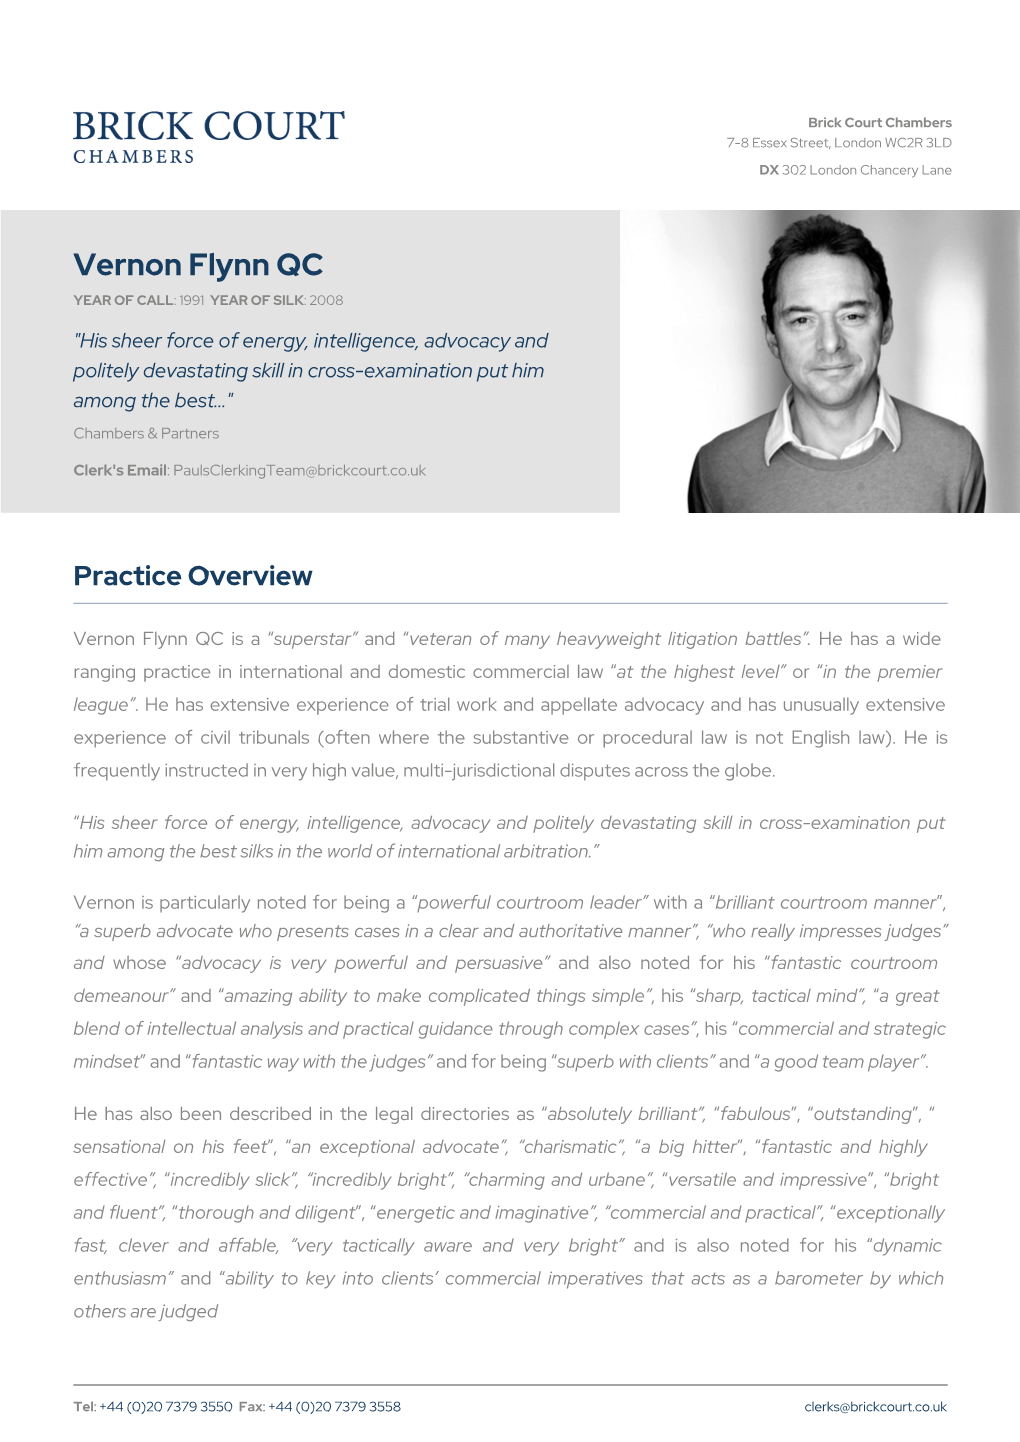 Vernon Flynn QC | Brick Court Chambers